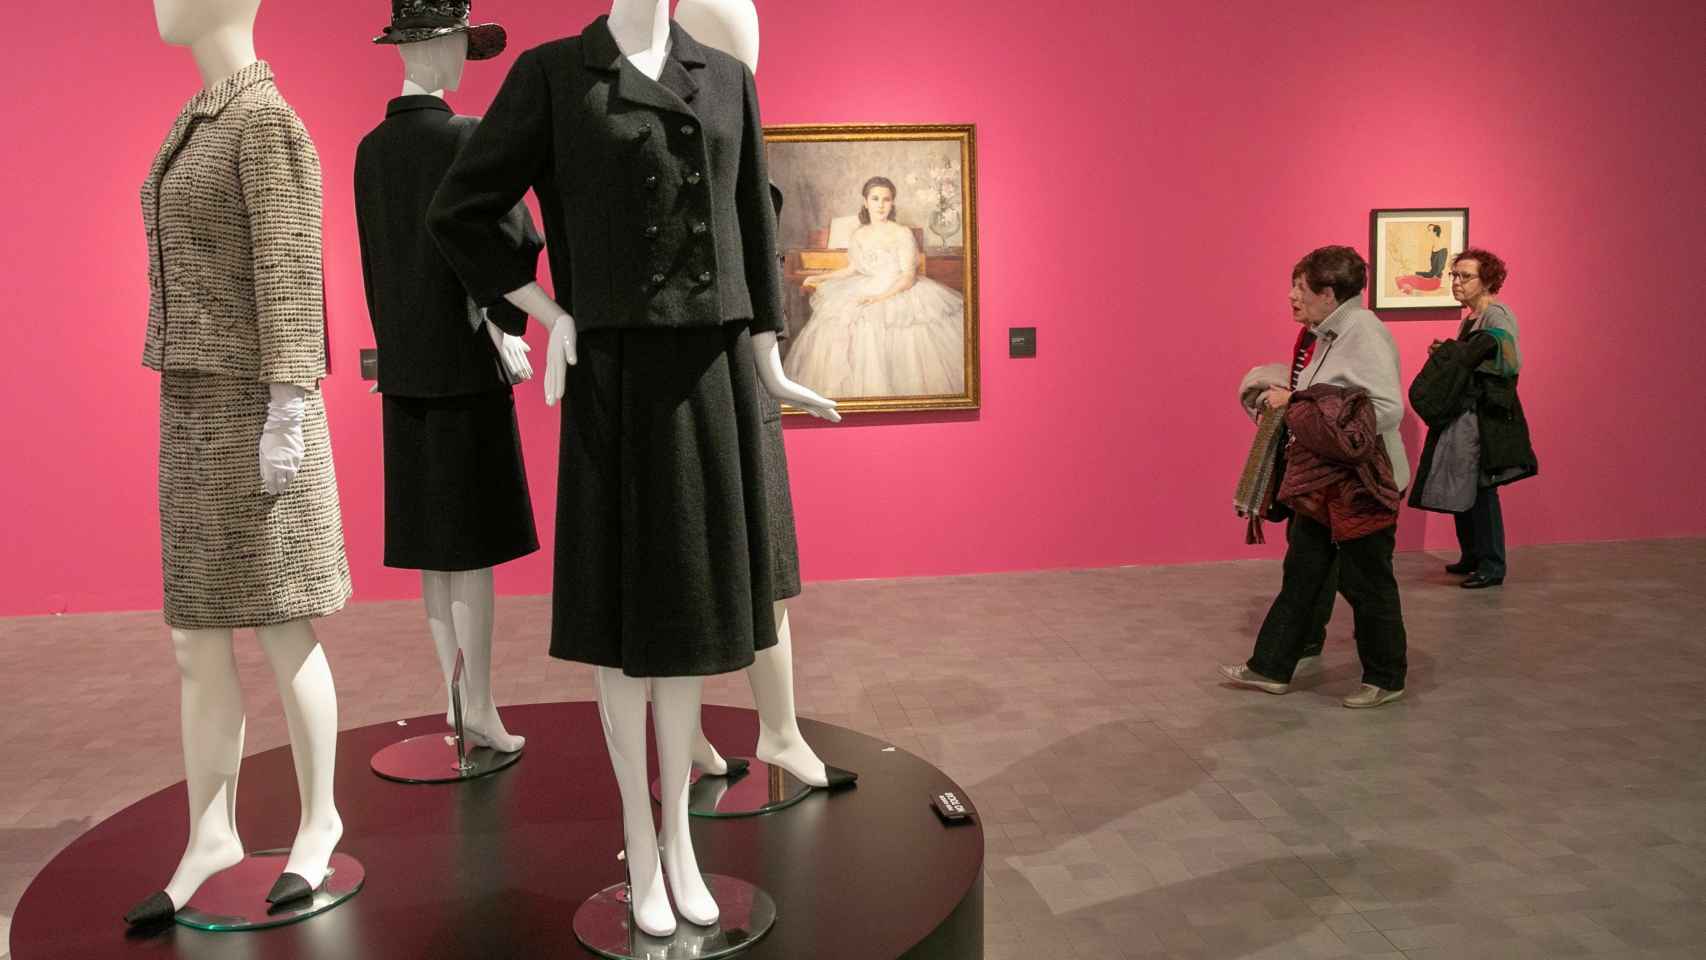 La elegancia y feminidad se respira en la exhibición de Balenciaga.